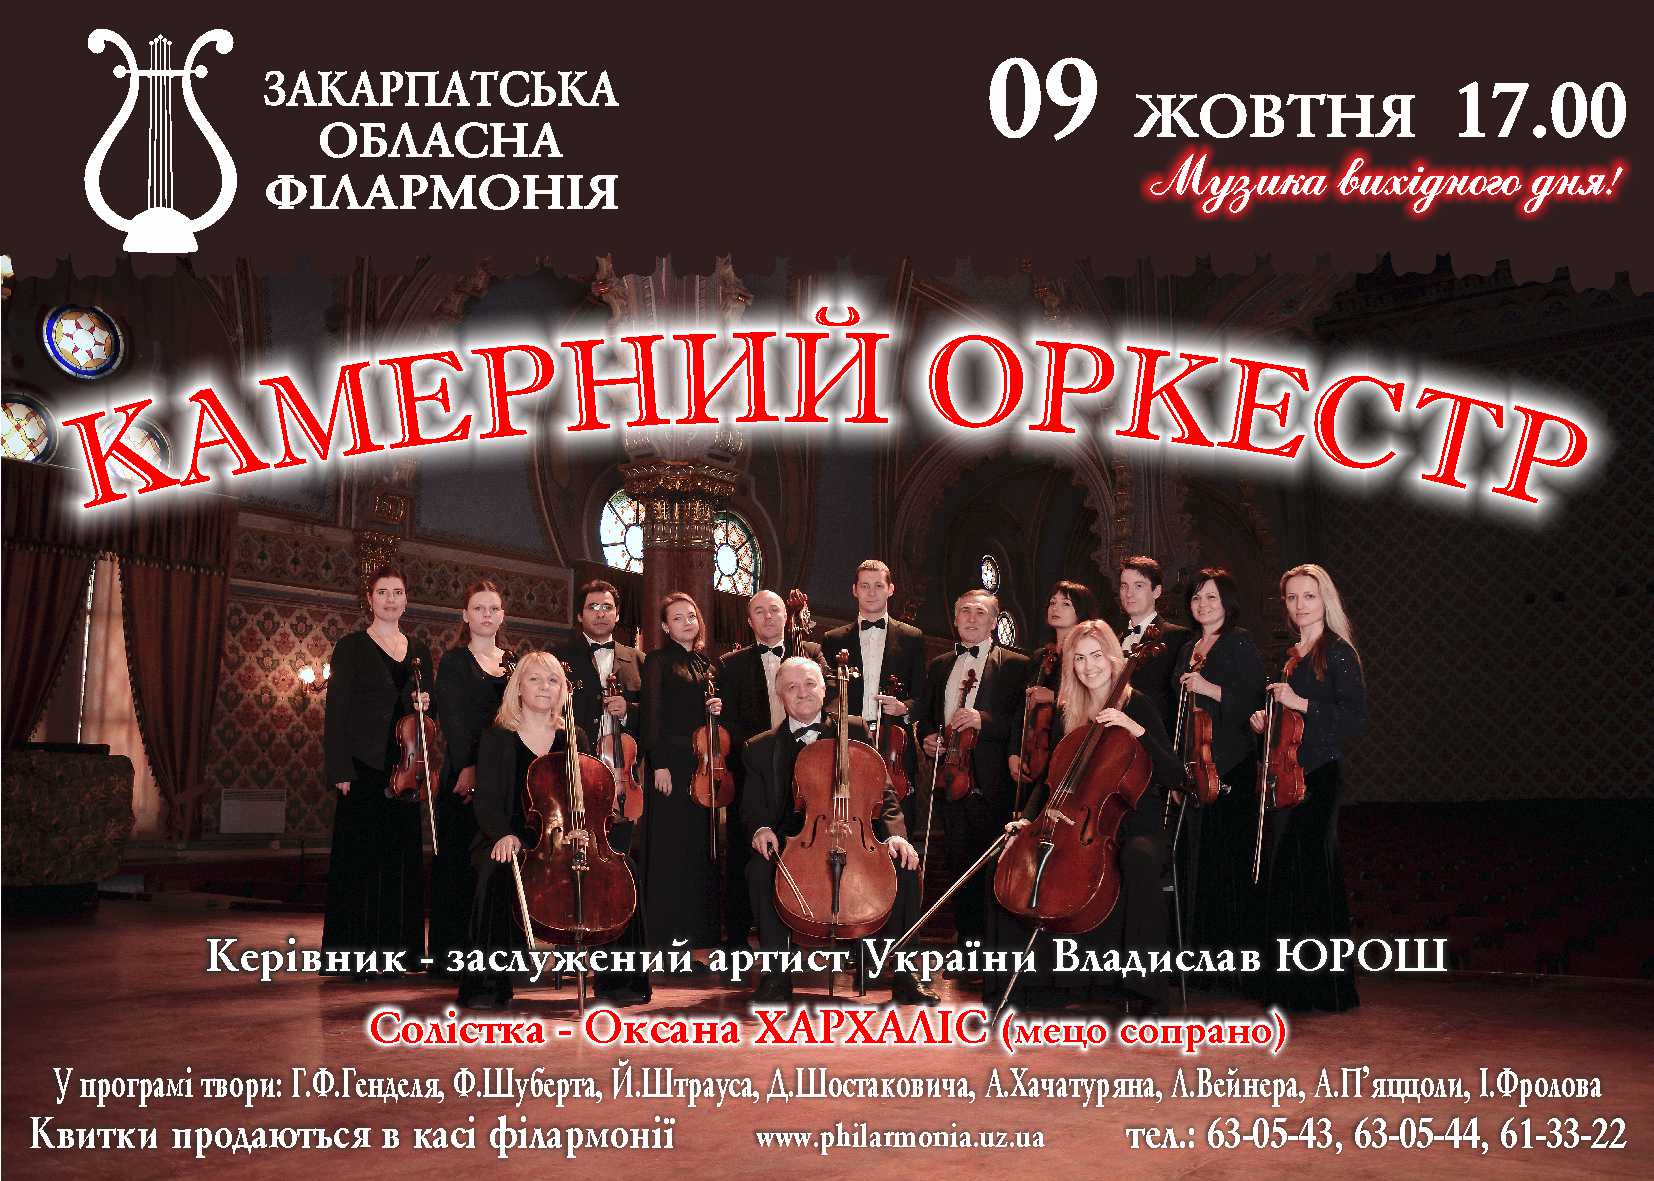 Закарпатська обласна філармонія відновлює "Музику вихідного дня" концертом камерного оркестру